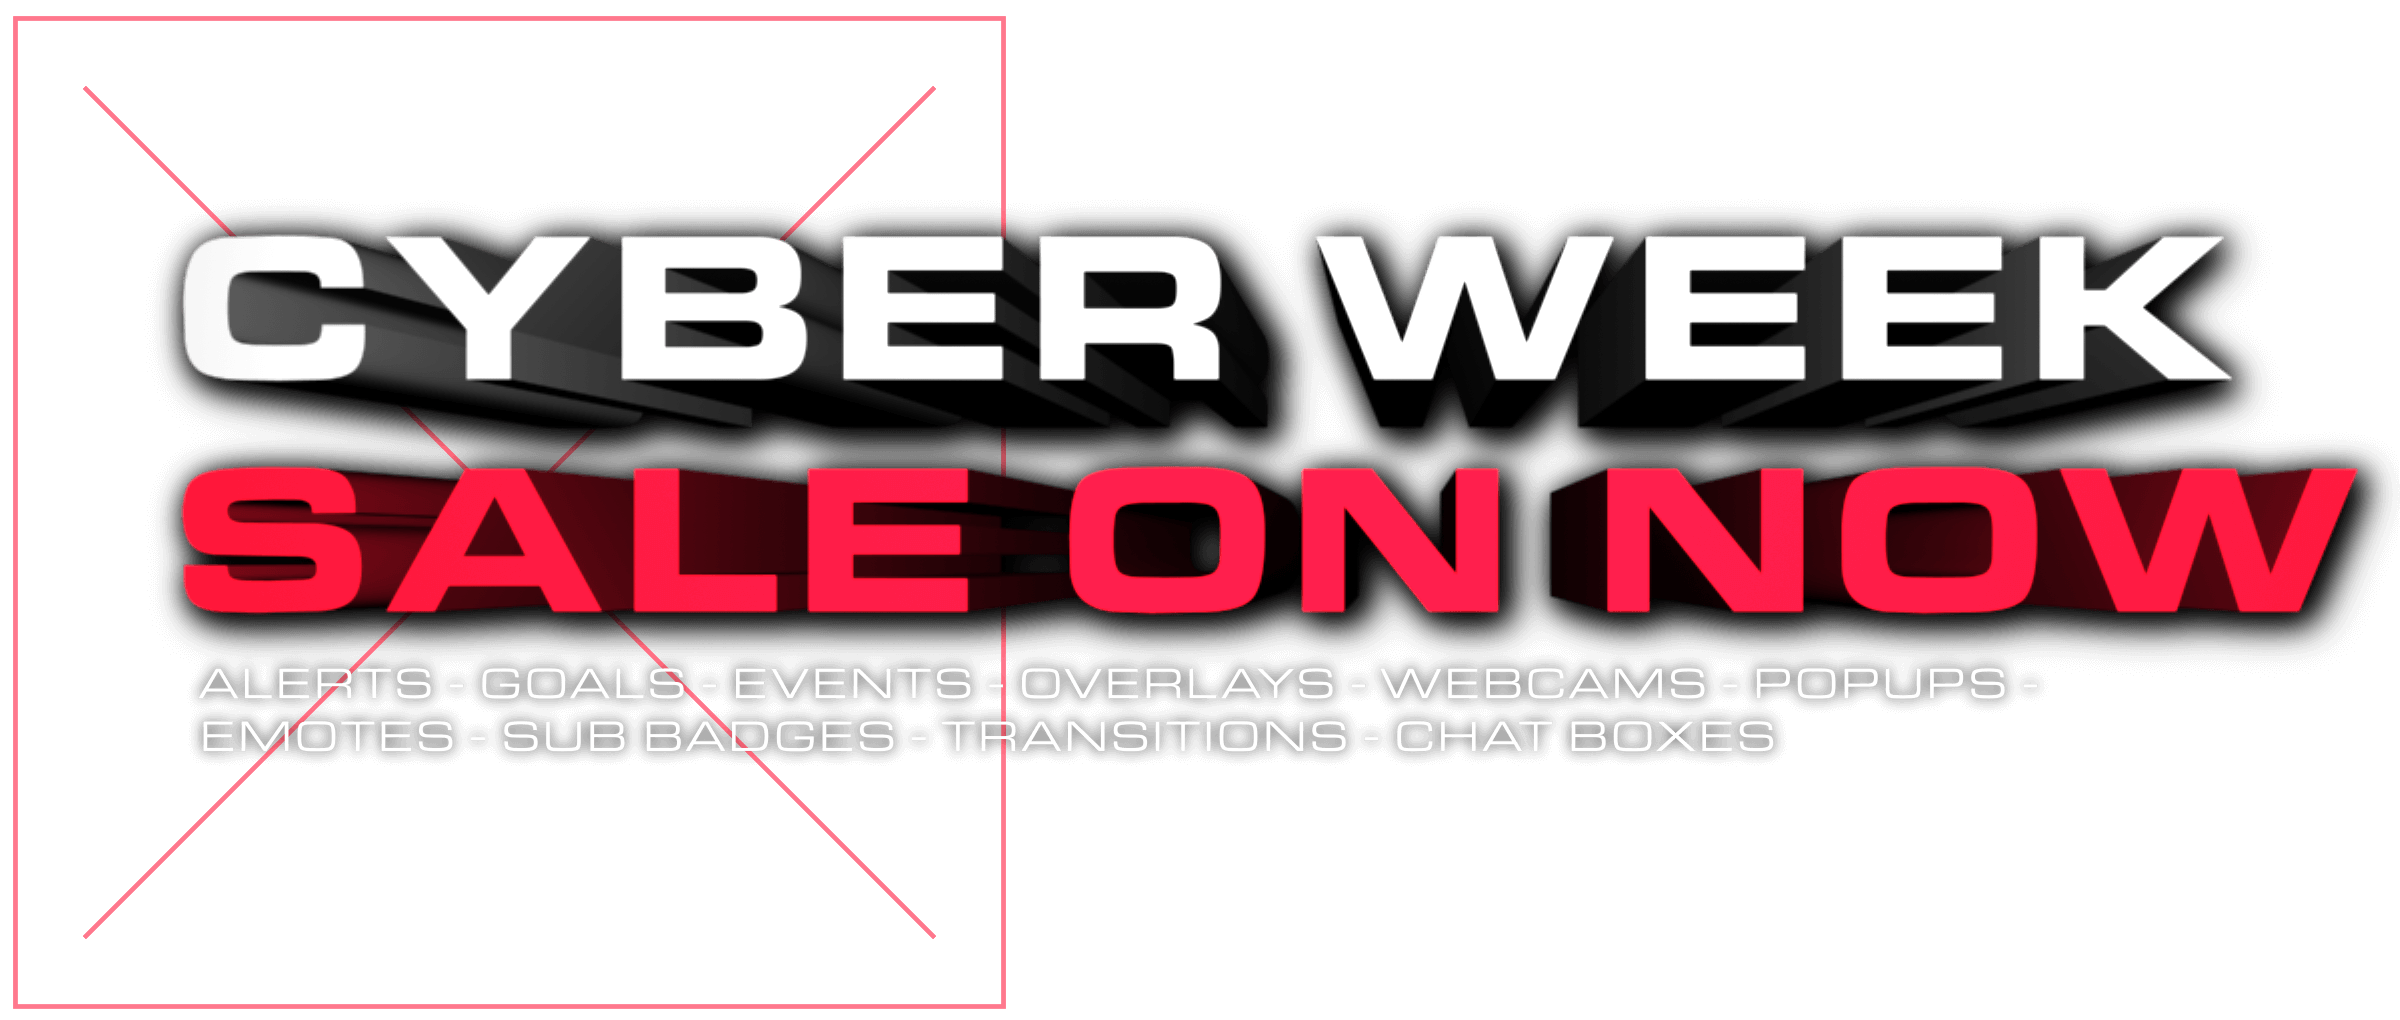 Cyber Week Sale on Now